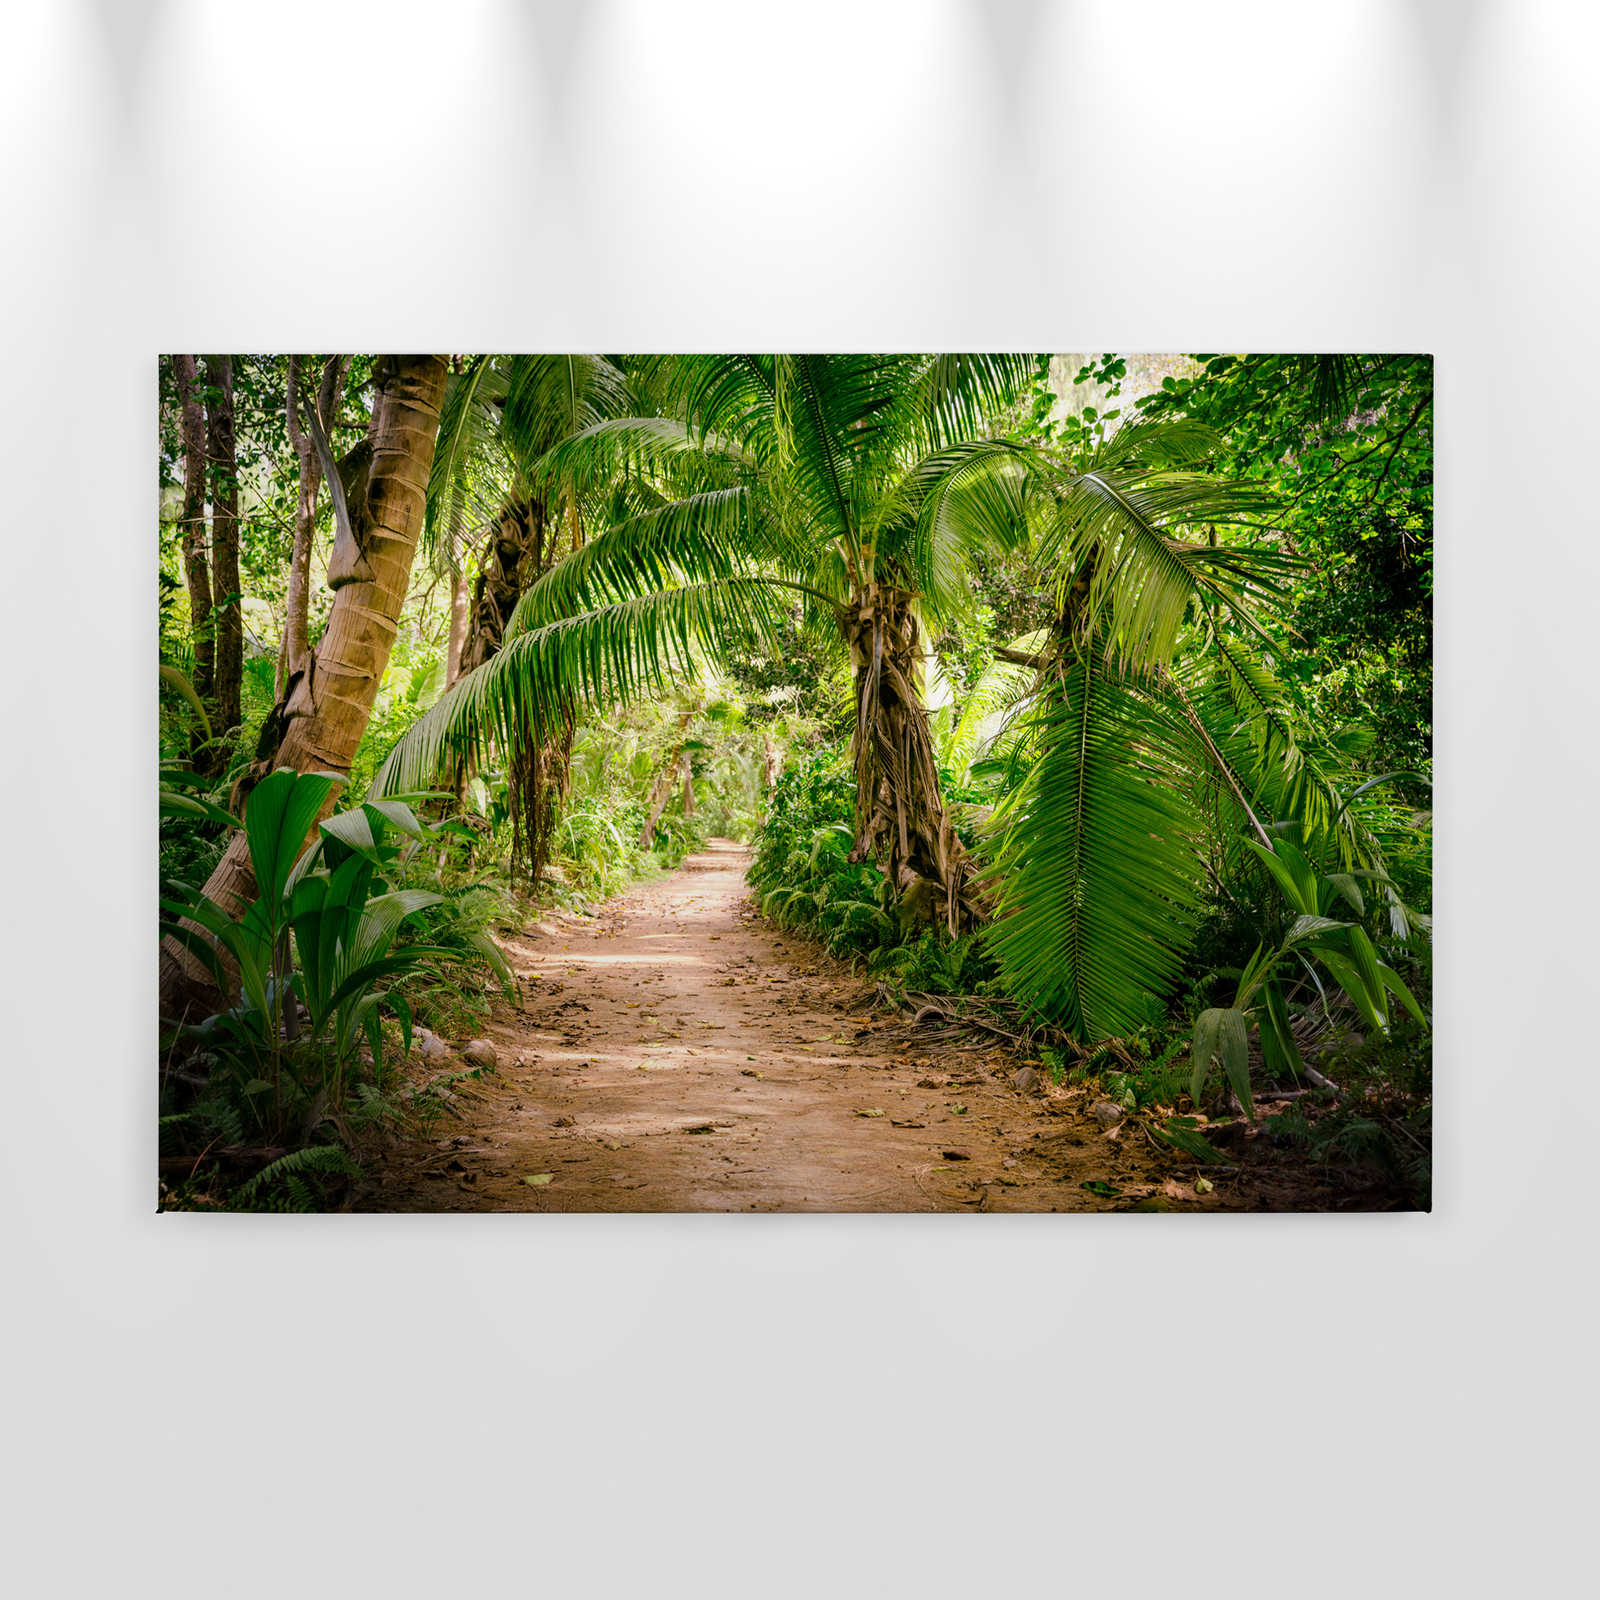             Leinwand mit Palmenweg durch eine tropische Landschaft – 0,90 m x 0,60 m
        